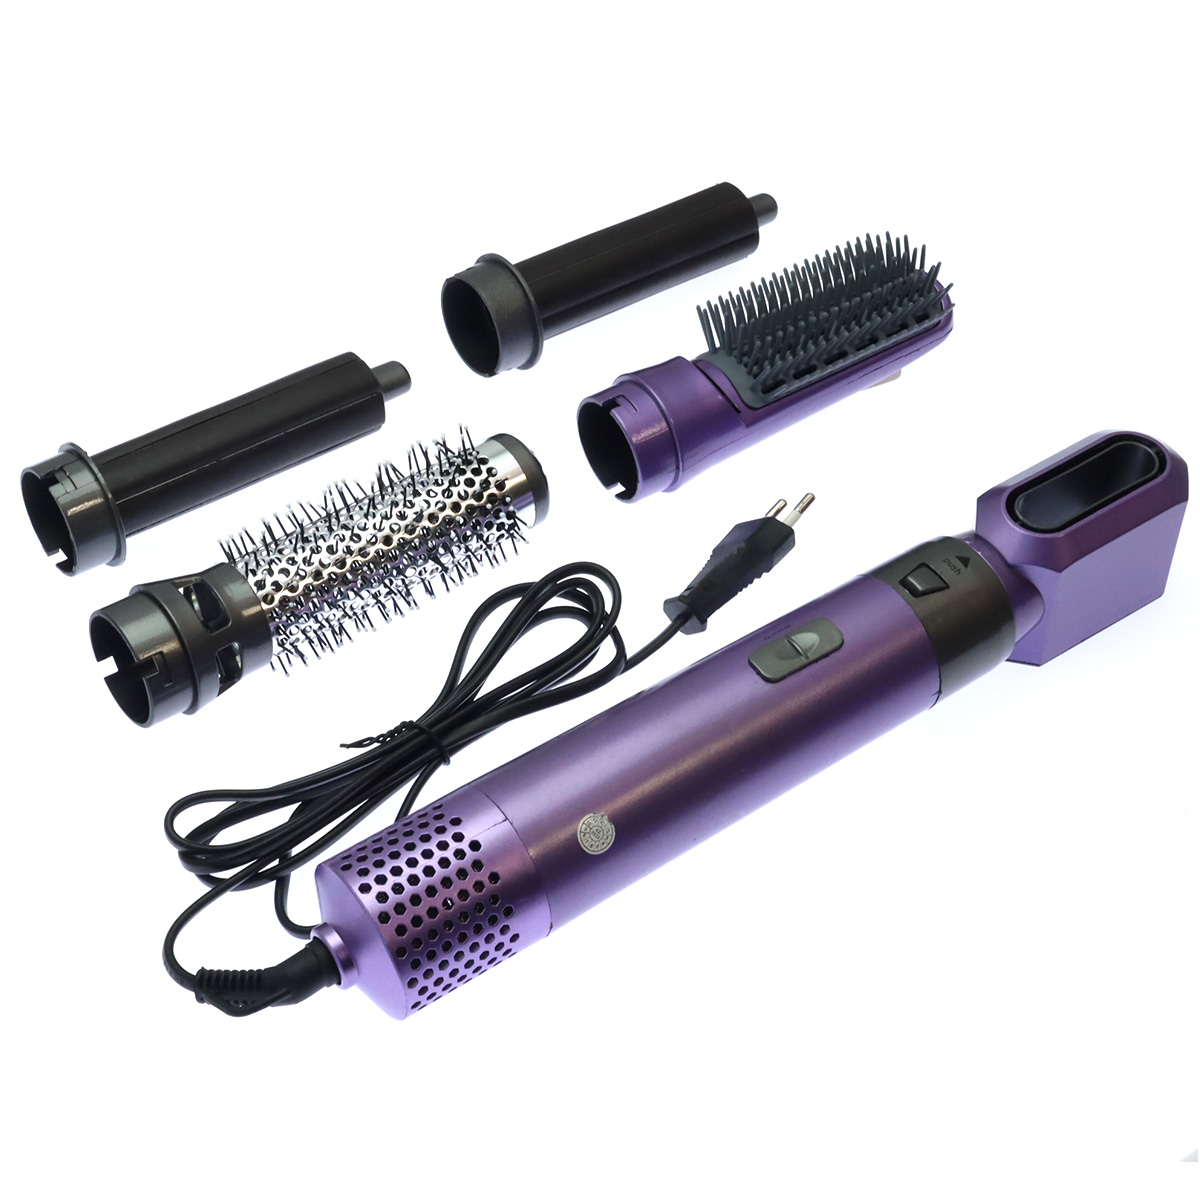 Стайлер (фен щетка) для волос Hot Air Styler, 5 насадок, 1000W, кейс, цвет фиолетово черный